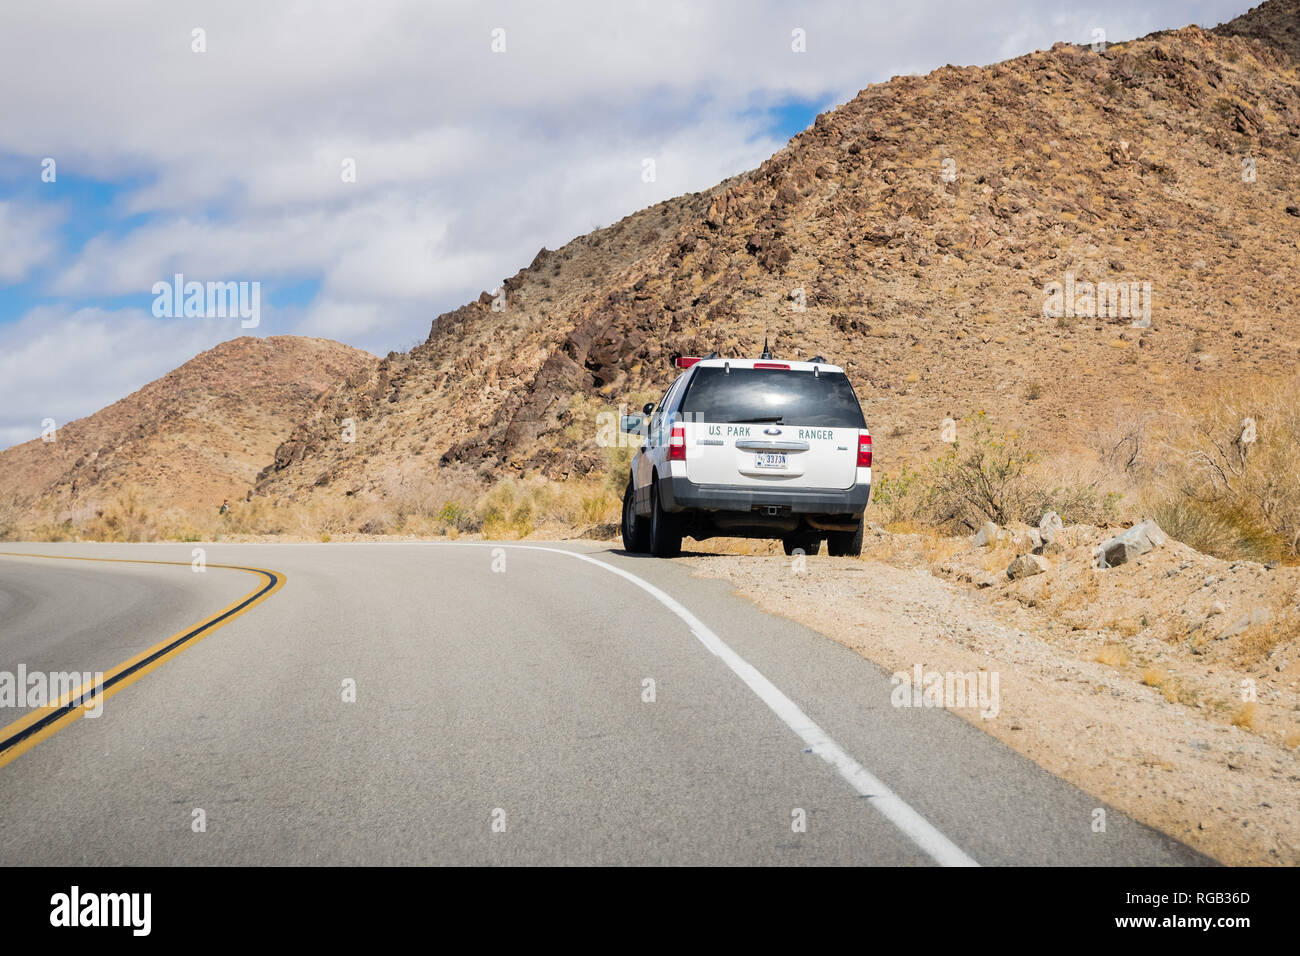 17 mars 2018, Joshua Tree NP / CA / USA - Ranger voiture s'est arrêtée sur le côté d'une route pavée Banque D'Images